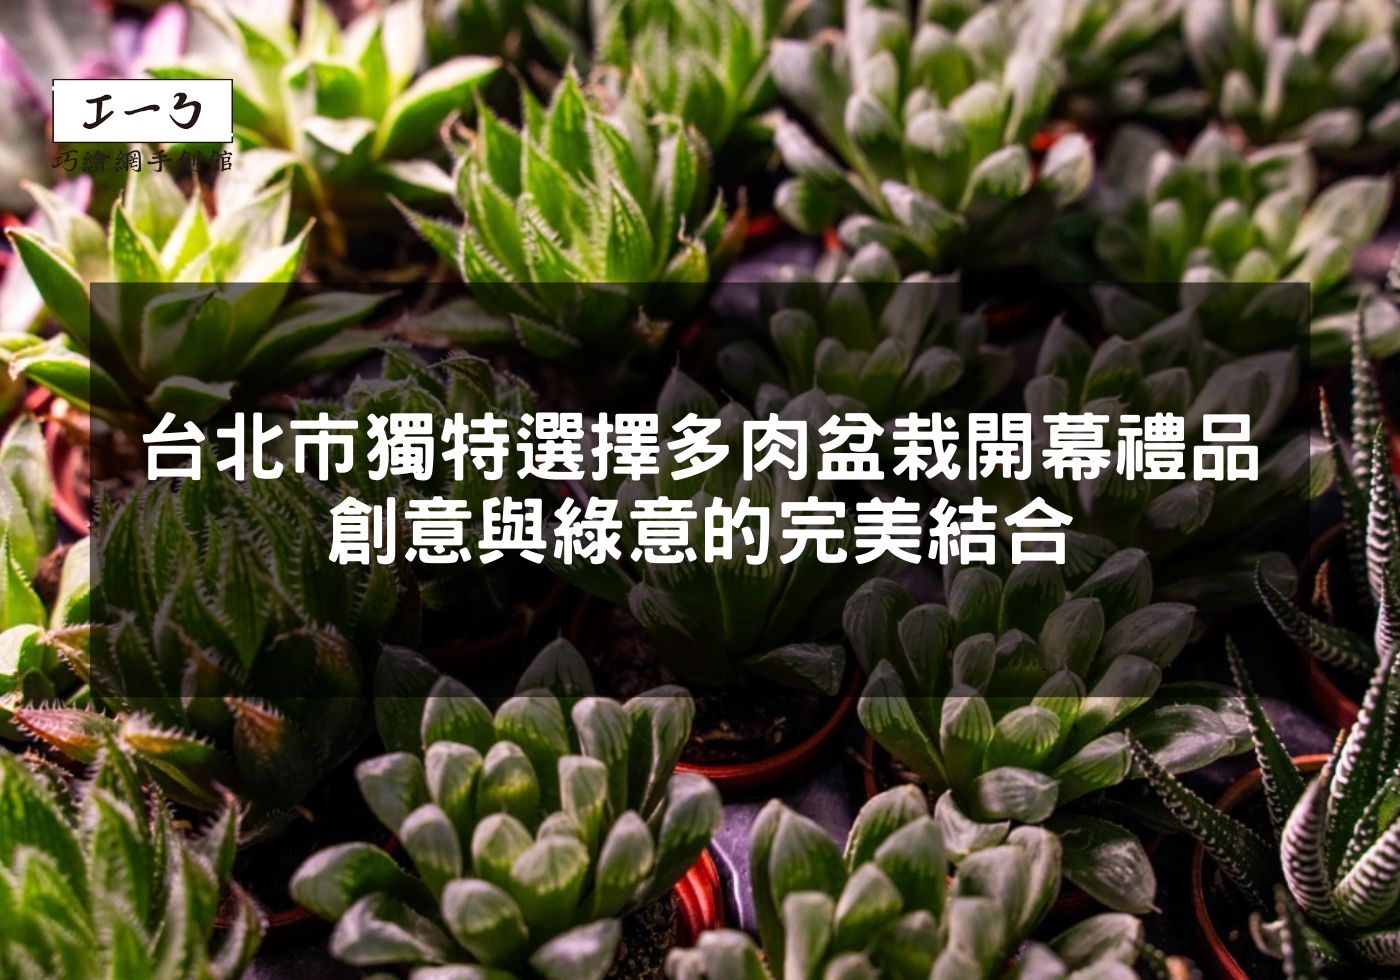 您目前正在查看 台北市獨特選擇 多肉盆栽開幕禮品，創意與綠意的完美結合